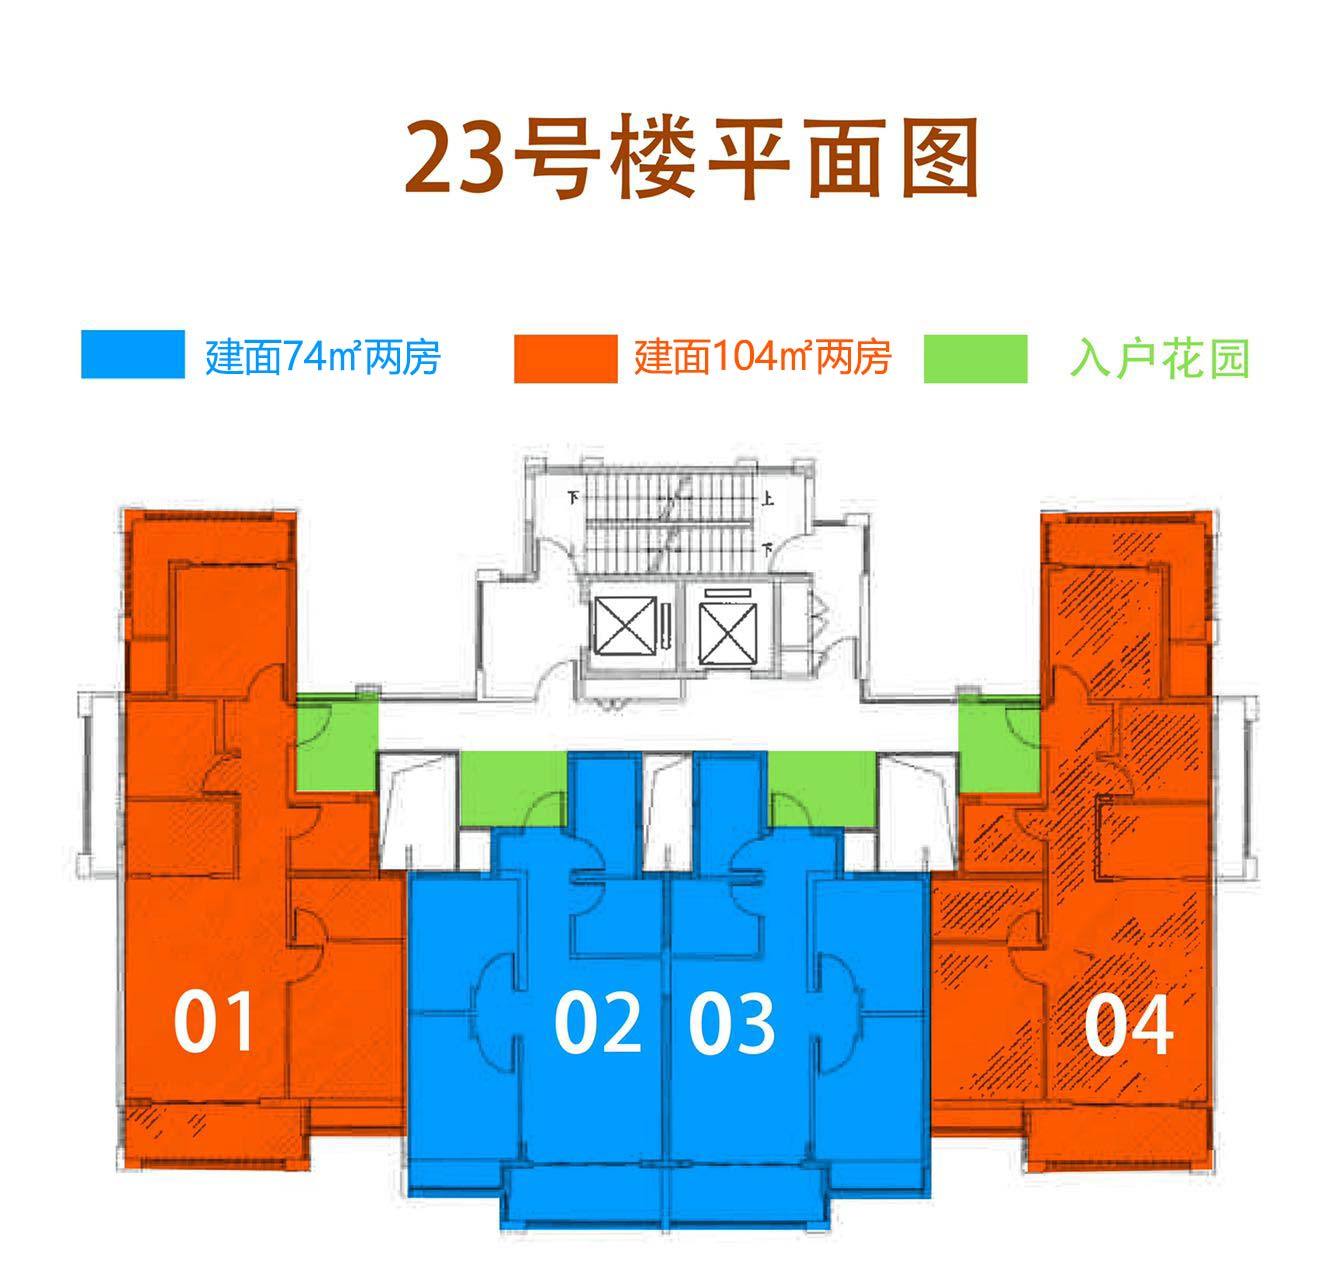 中电海湾国际 三期 23#号楼平面图